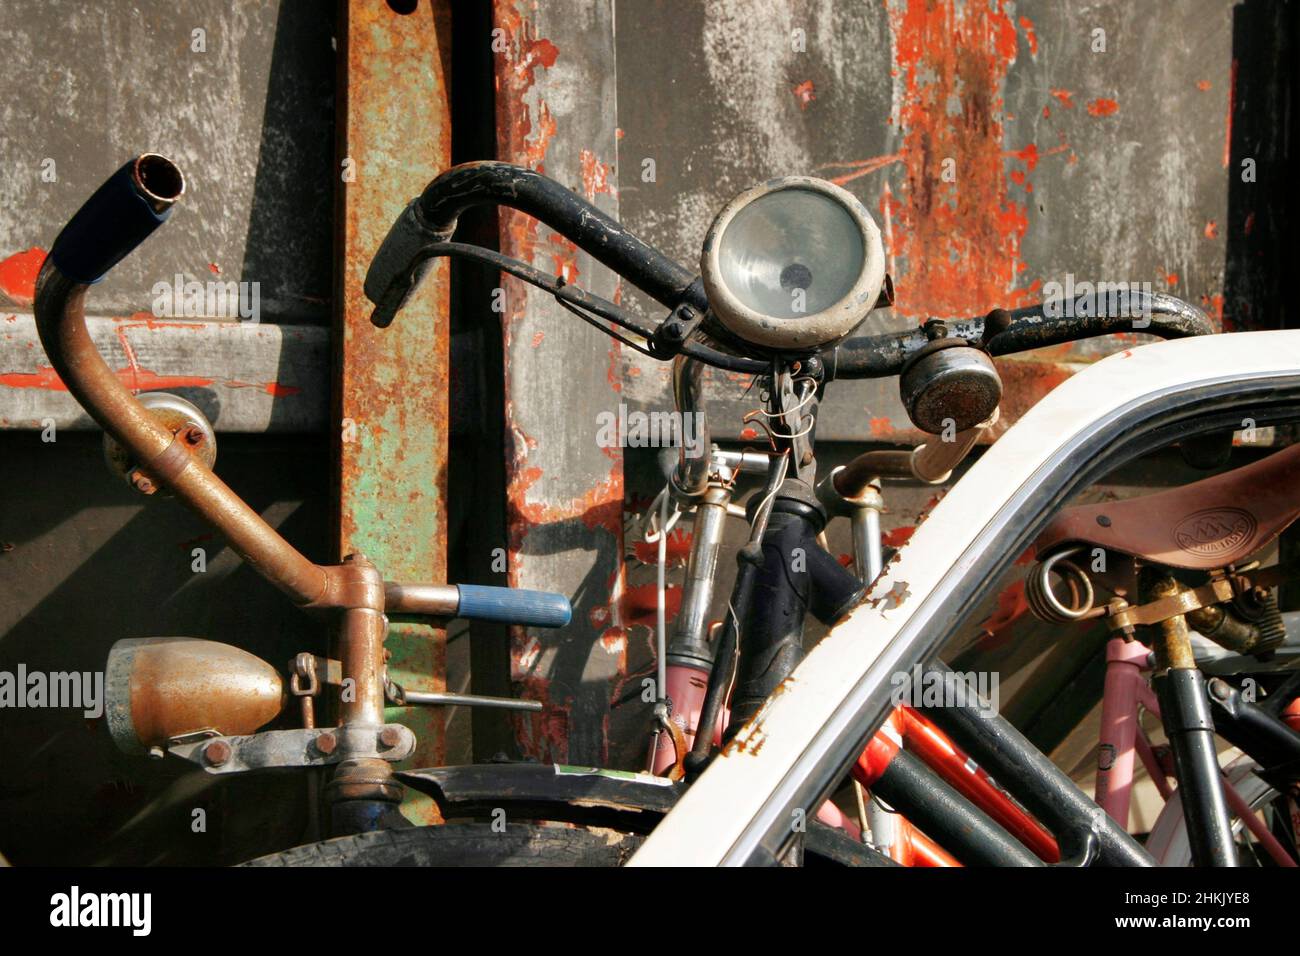 vecchie biciclette su una discarica, rottami di ferro Foto Stock